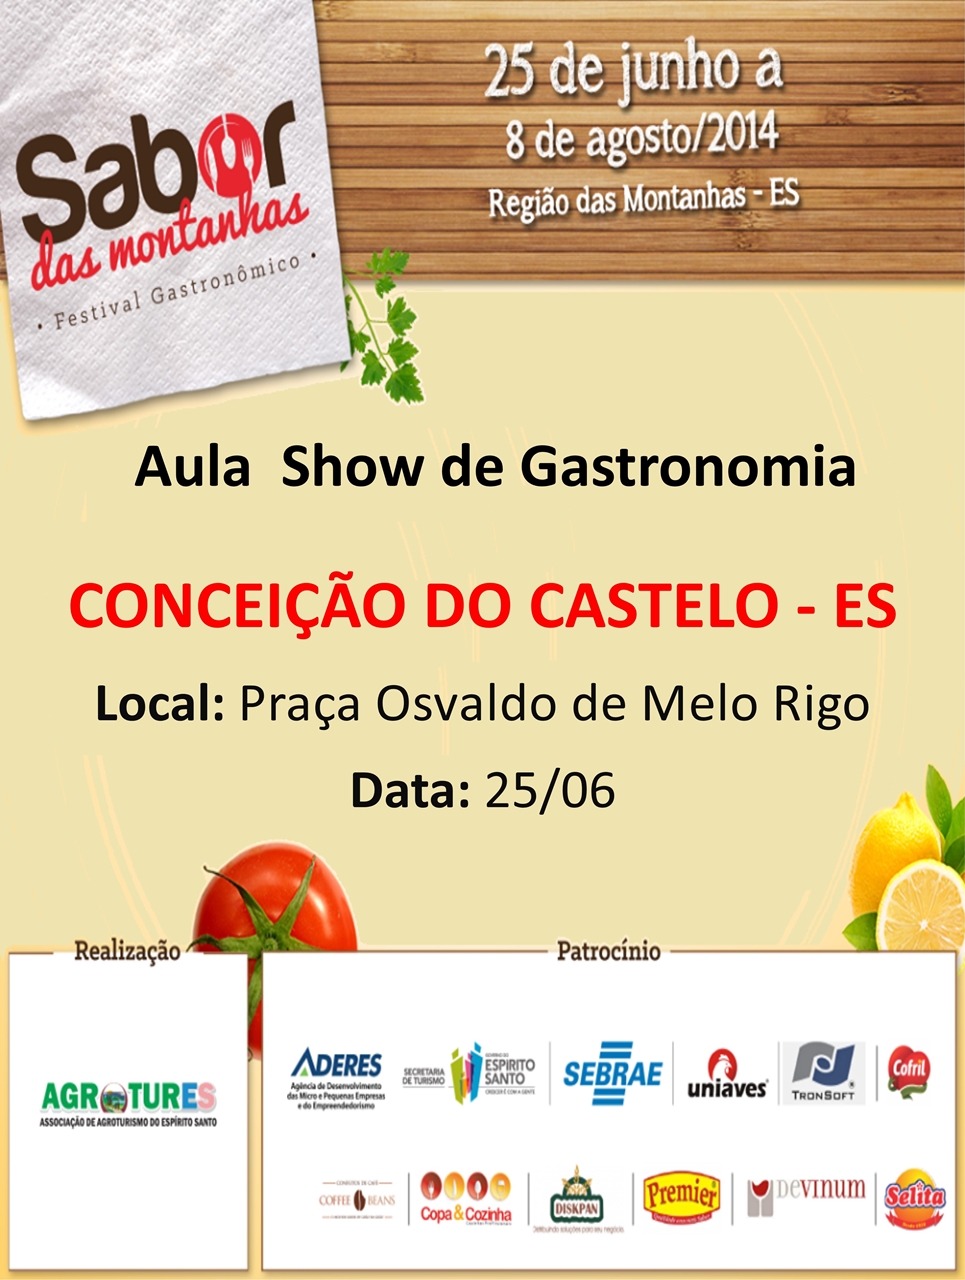 Município de Conceição do Castelo recebe aula show de gastronomia no dia 25 de junho